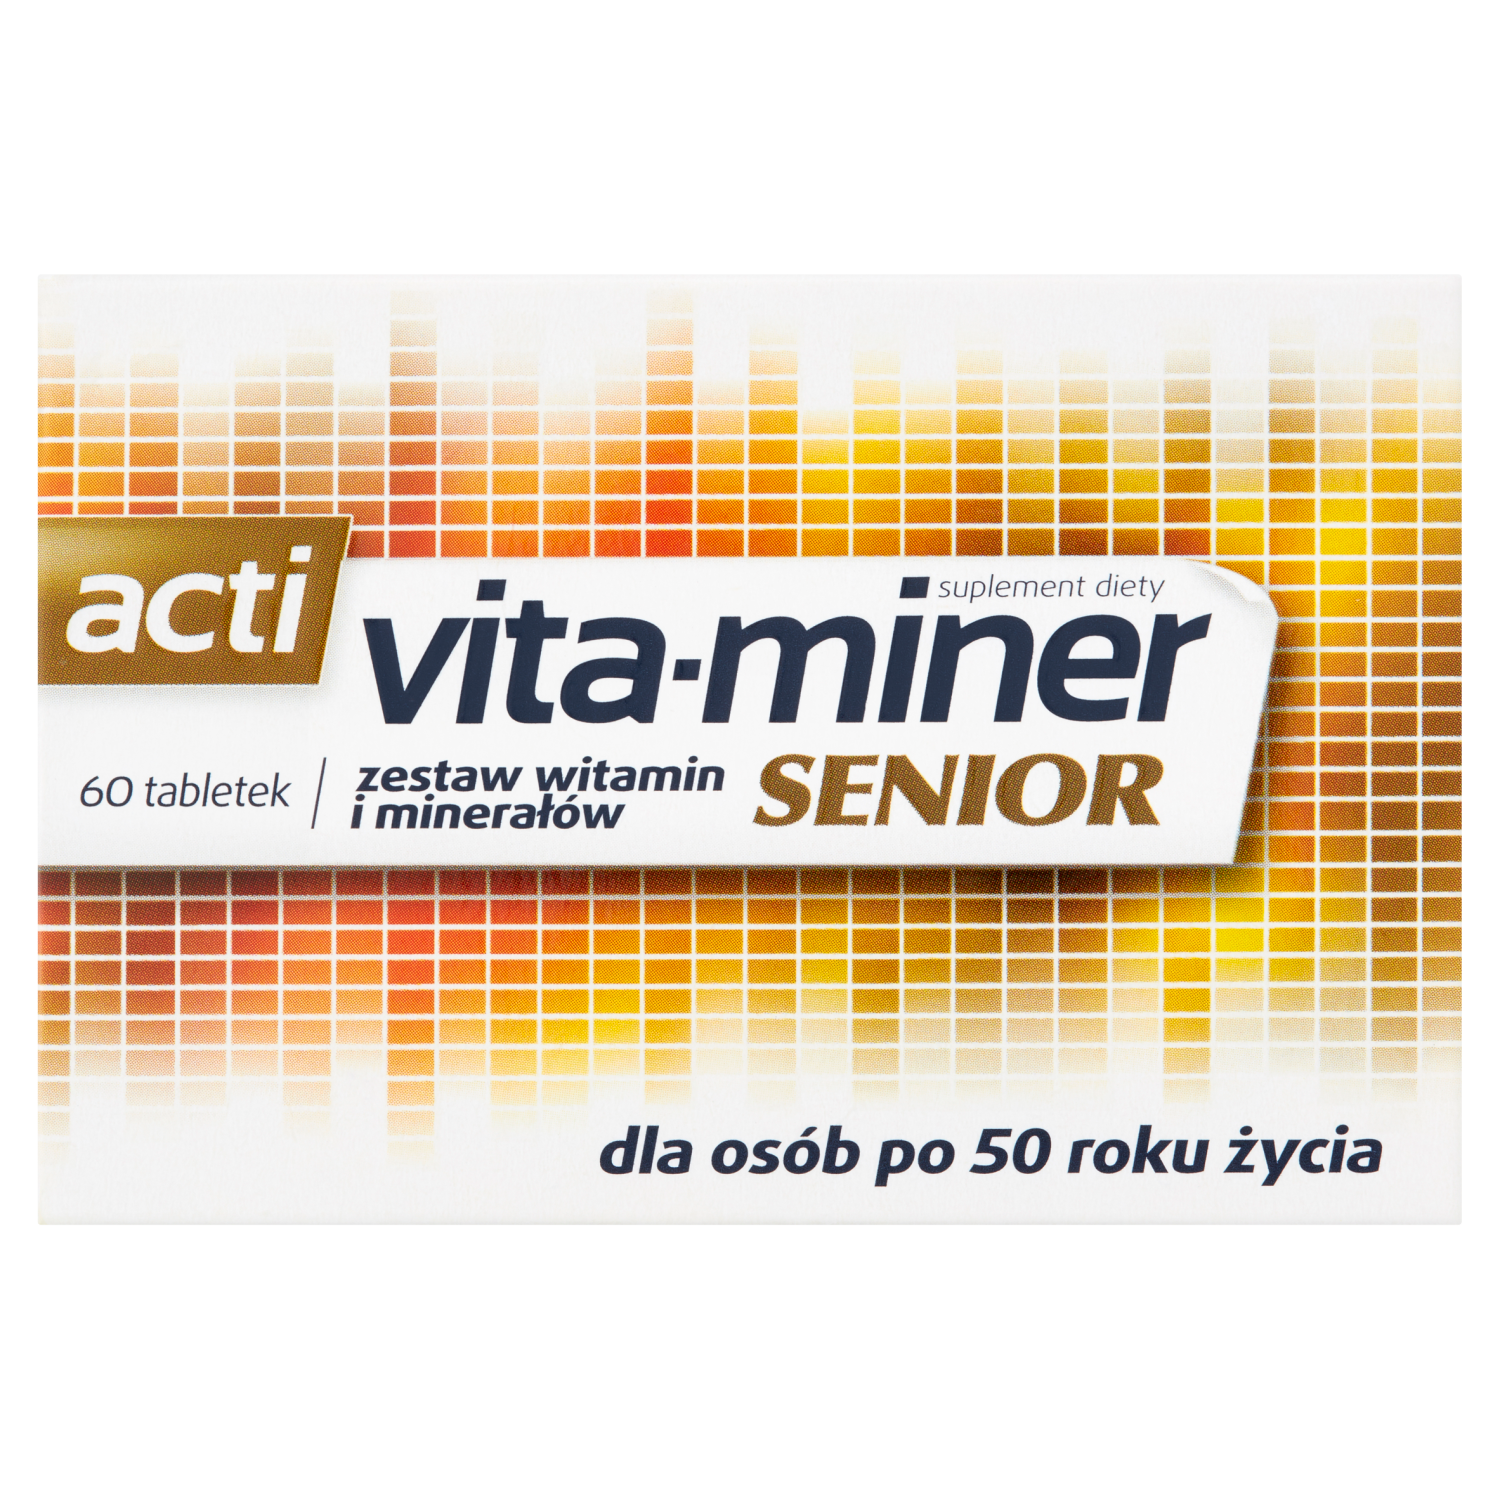 liporedium биологически активная добавка 60 таблеток 1 упаковка Vita-Miner Senior биологически активная добавка, 60 таблеток/1 упаковка